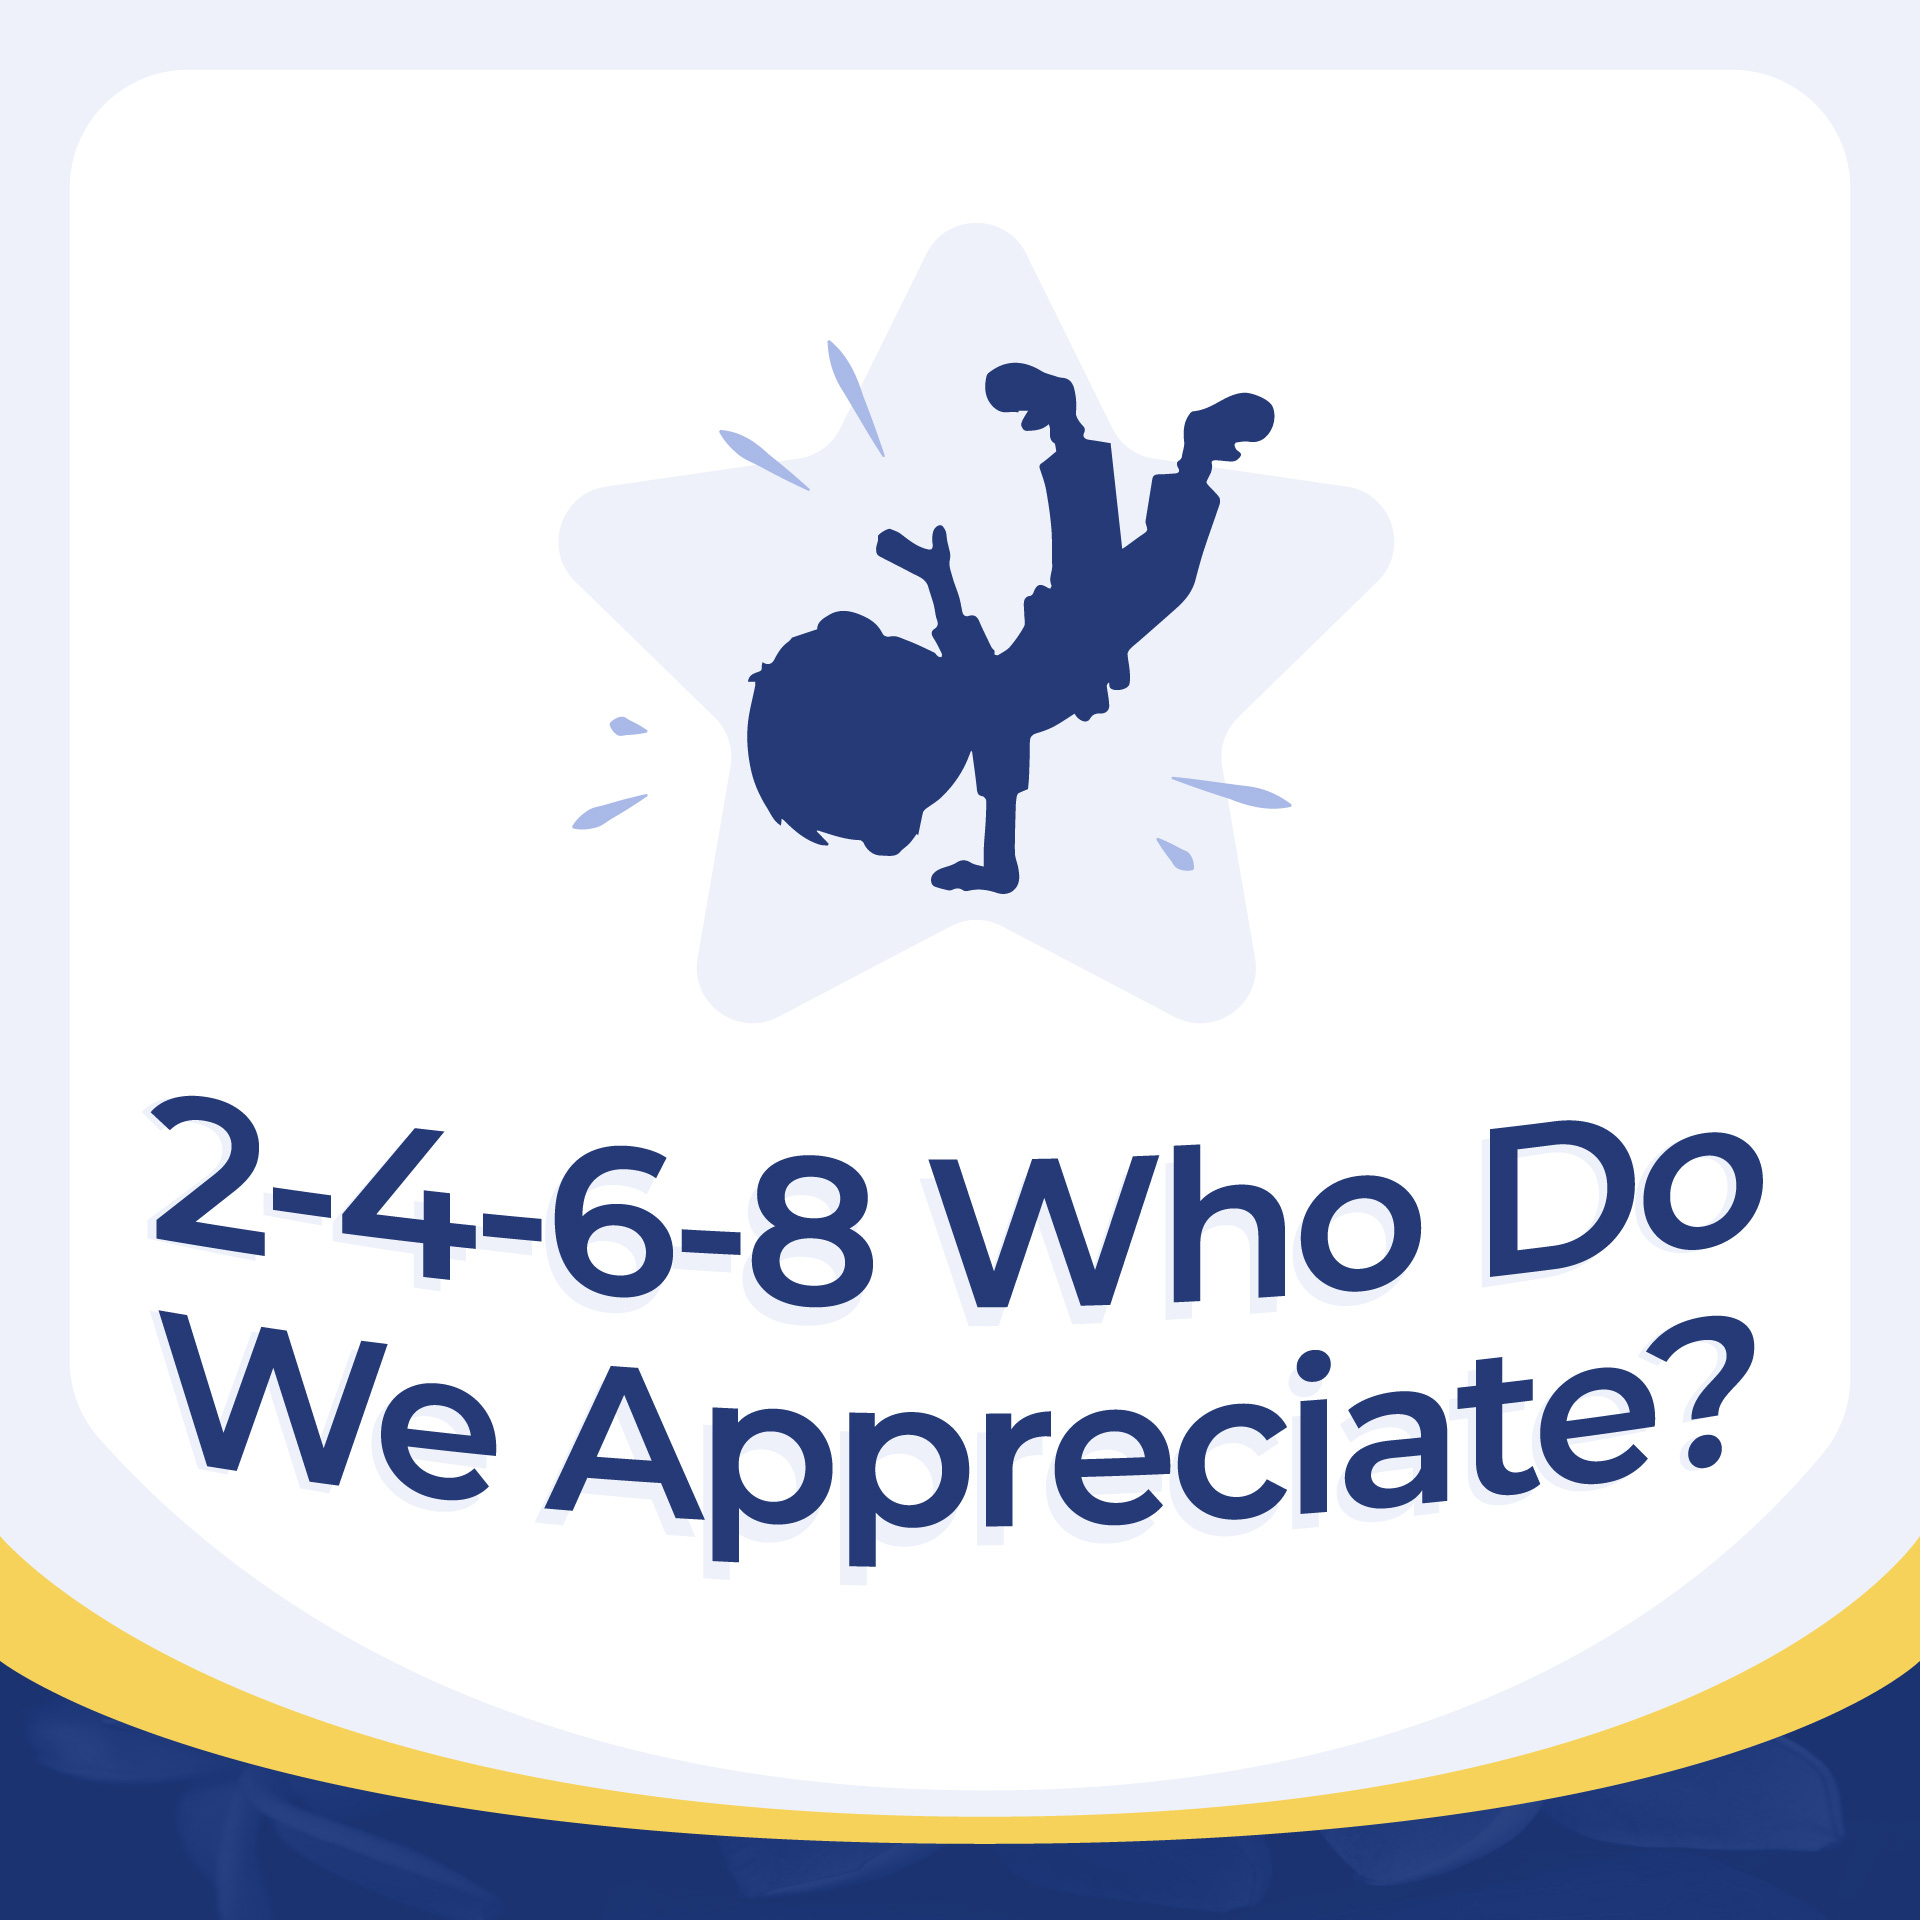 2-4-6-8 Who Do We Appreciate